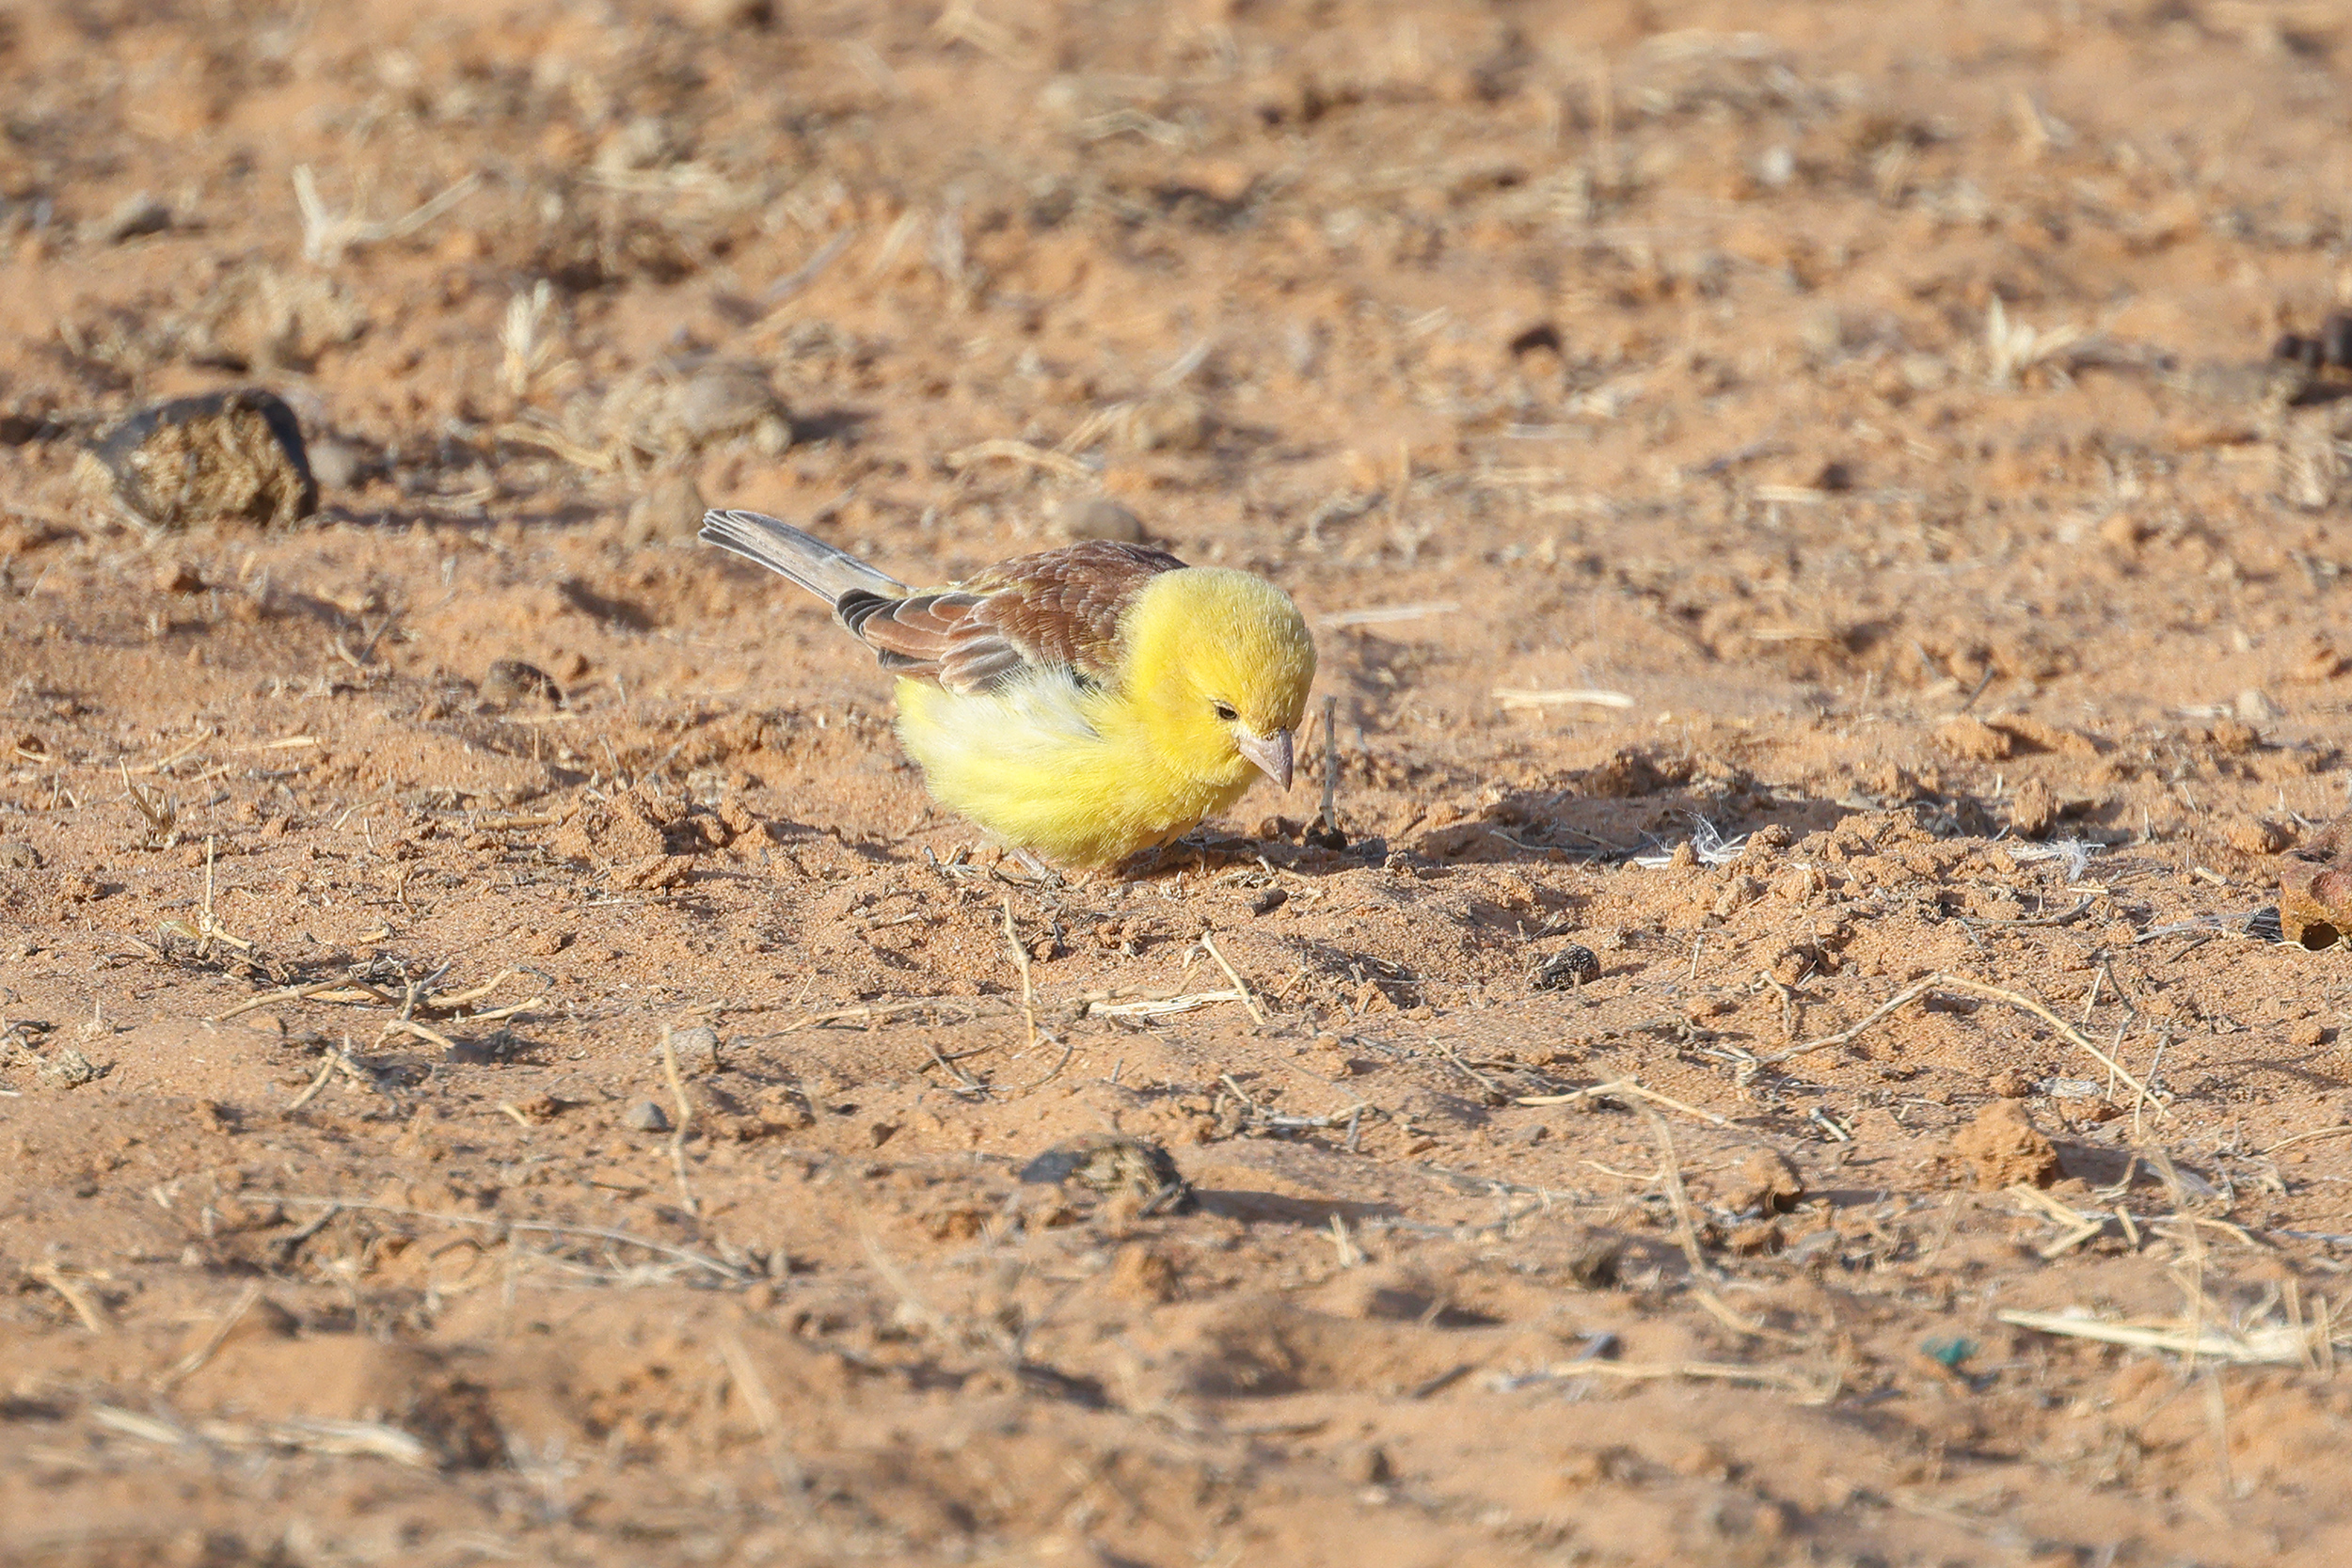 Sudan Golden Sparrow, Richard Toll, Senegal.